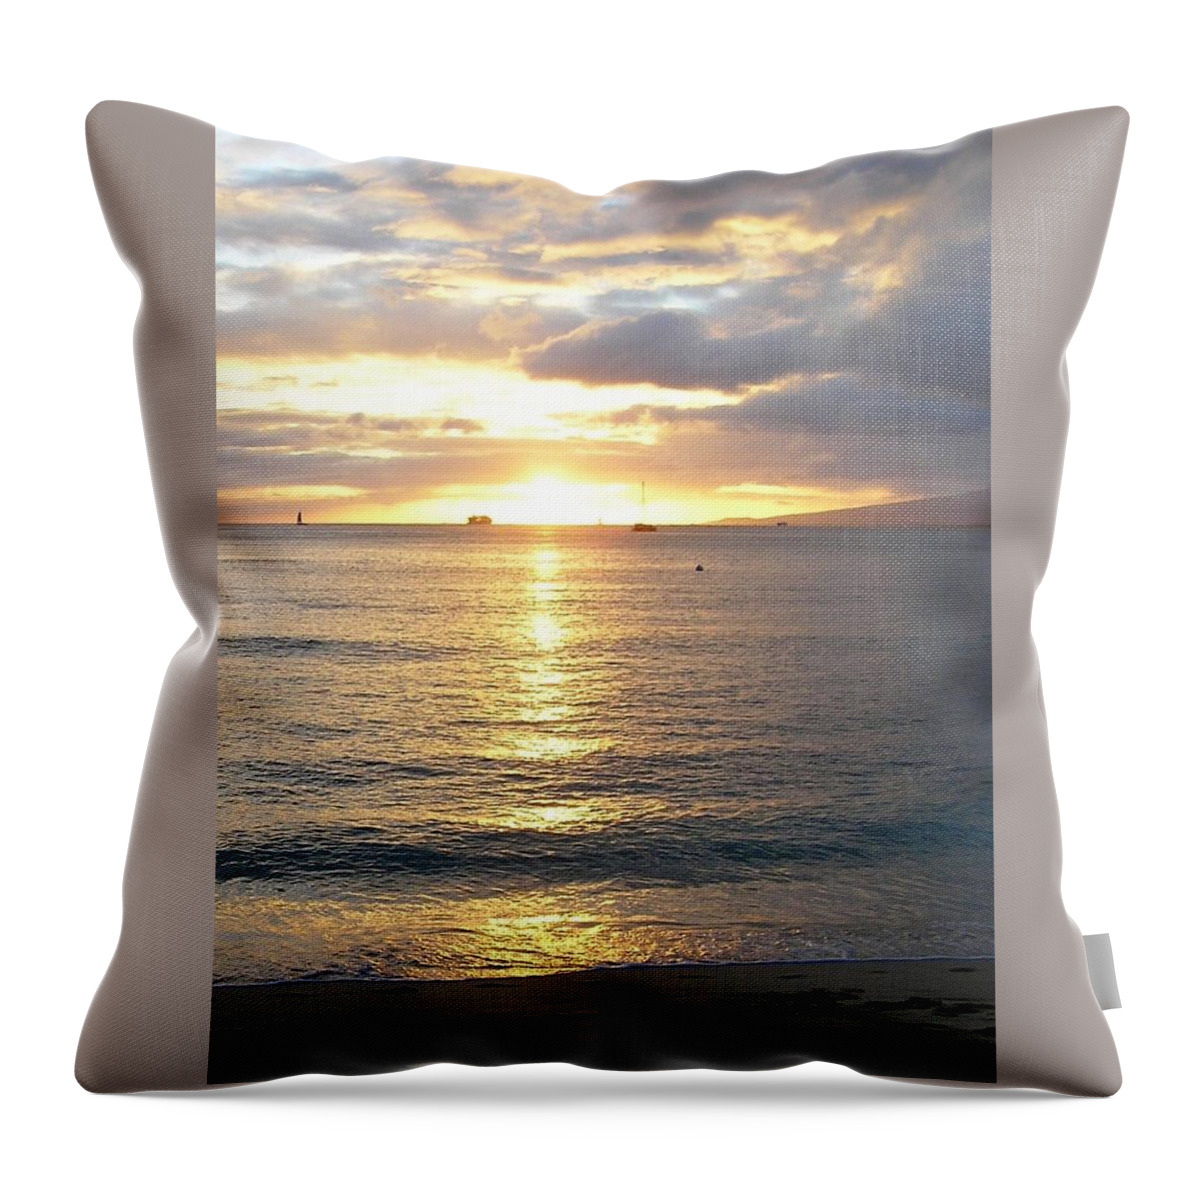 Waikiki Throw Pillow featuring the photograph Waikiki Sunset #1 by Oleg Zavarzin